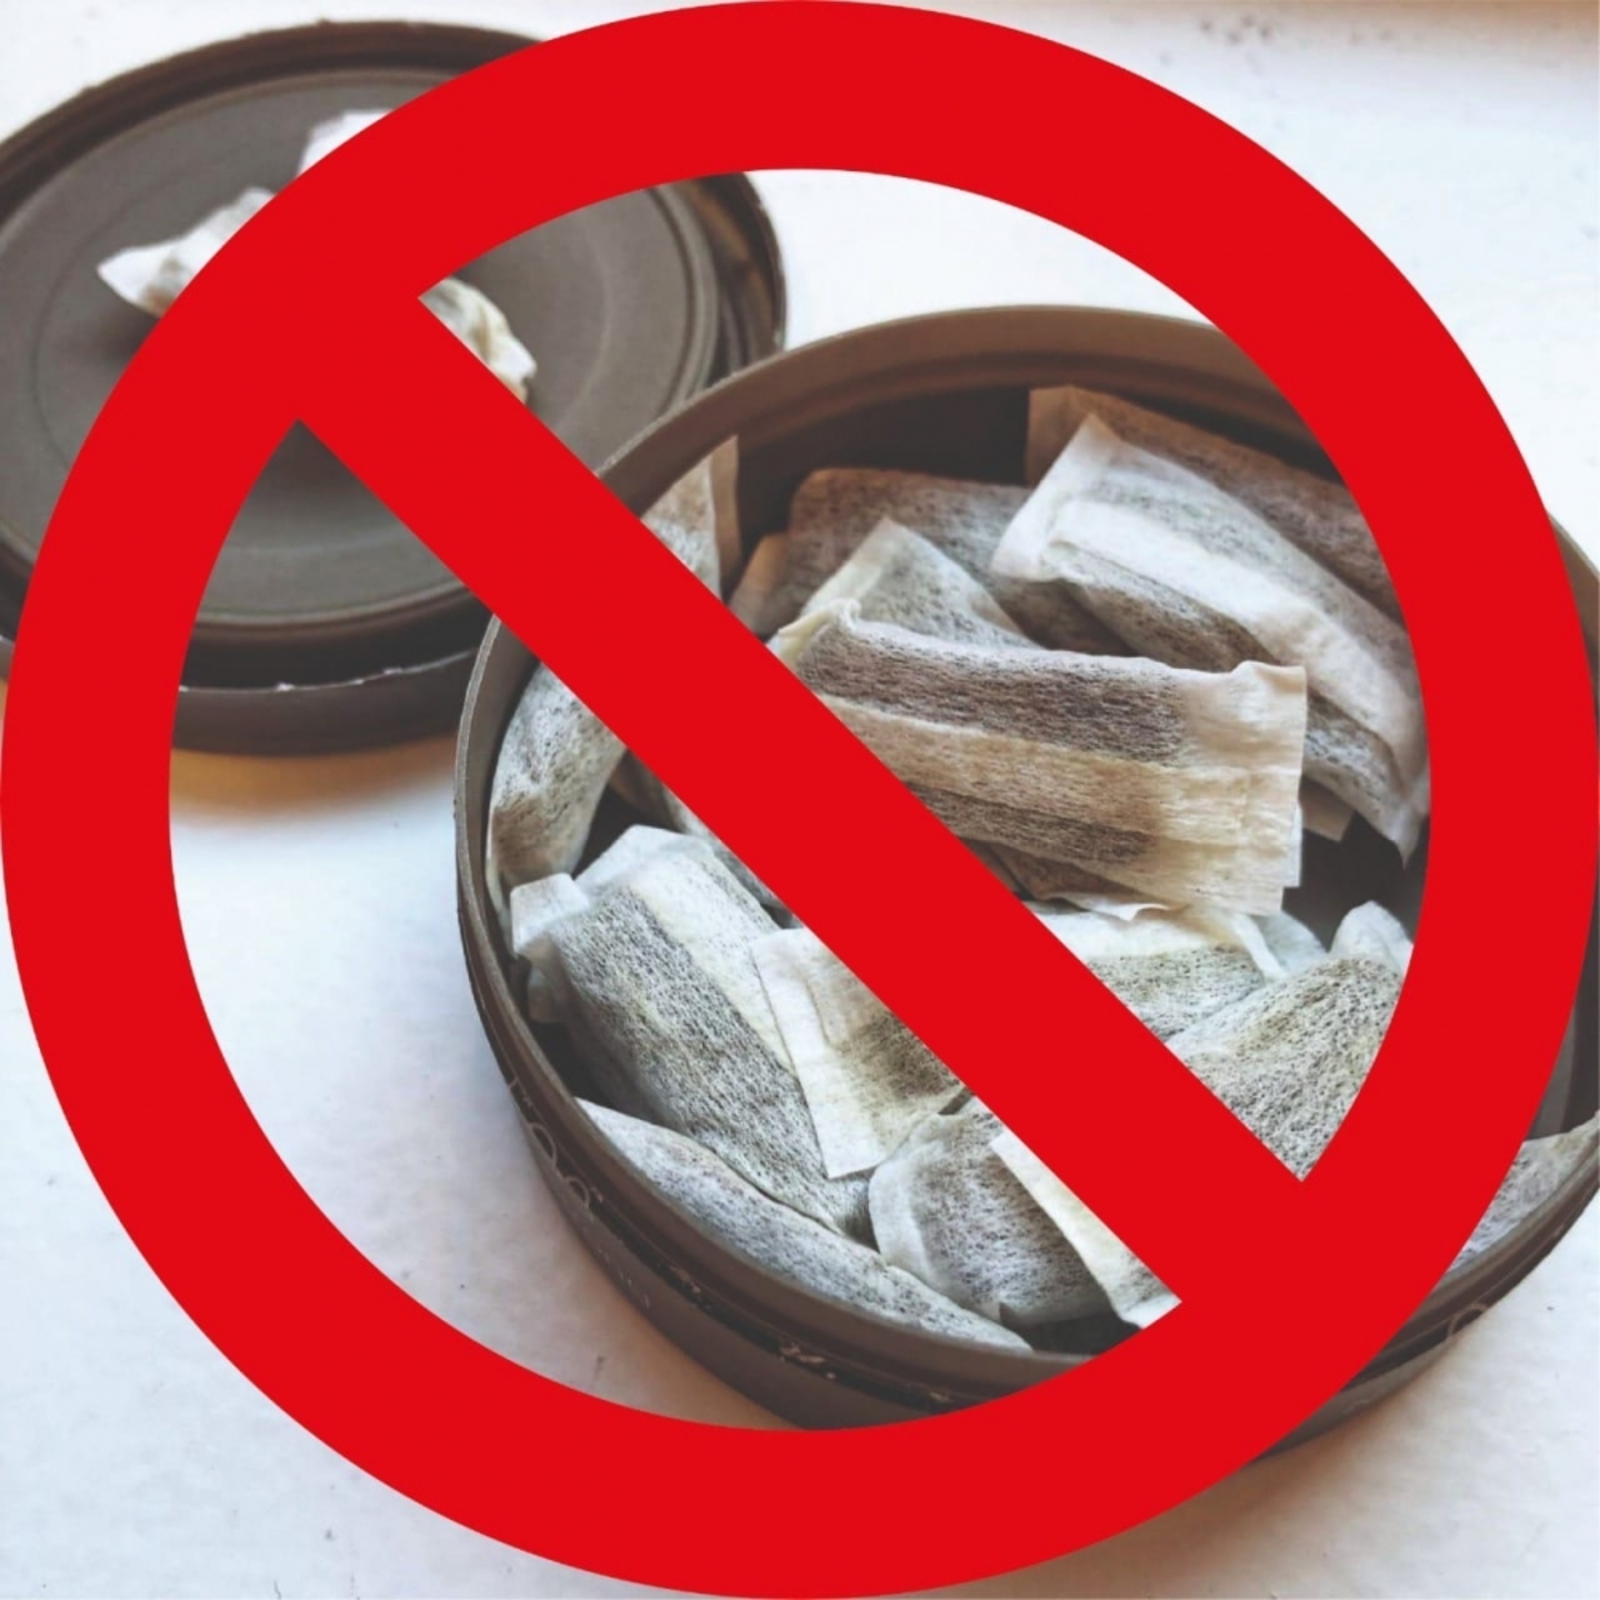 В россии запретили продажи. Снюс. Снюс запрет. Жевательный табак запрещен.